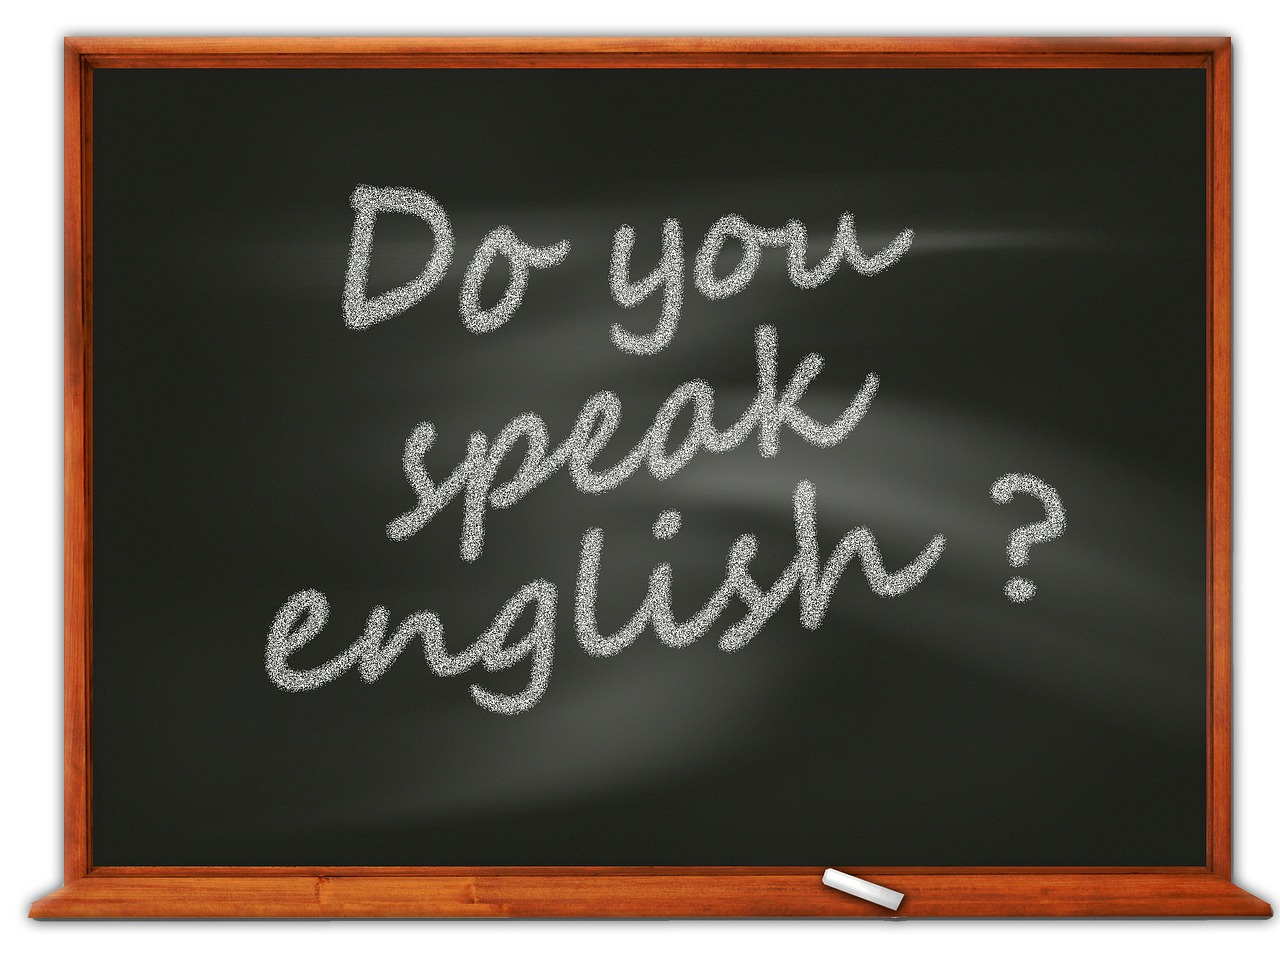 Selon une récente étude sur la maîtrise de l'anglais à travers le monde, la Thaïlande se classe parmi les pays à "faible niveau"